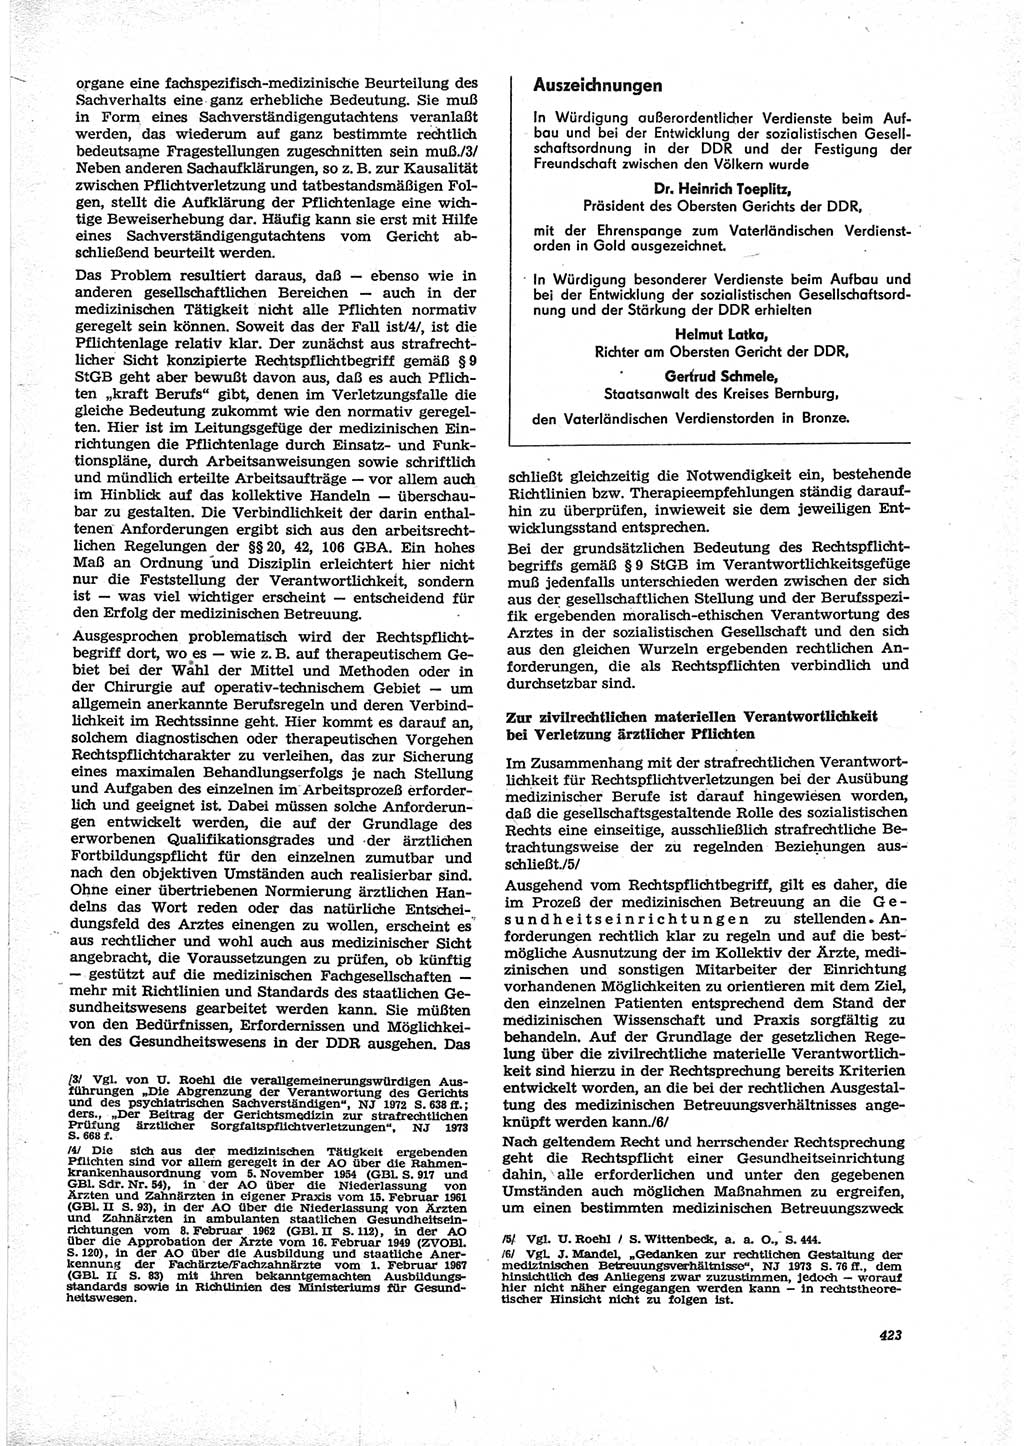 Neue Justiz (NJ), Zeitschrift für Recht und Rechtswissenschaft [Deutsche Demokratische Republik (DDR)], 28. Jahrgang 1974, Seite 423 (NJ DDR 1974, S. 423)